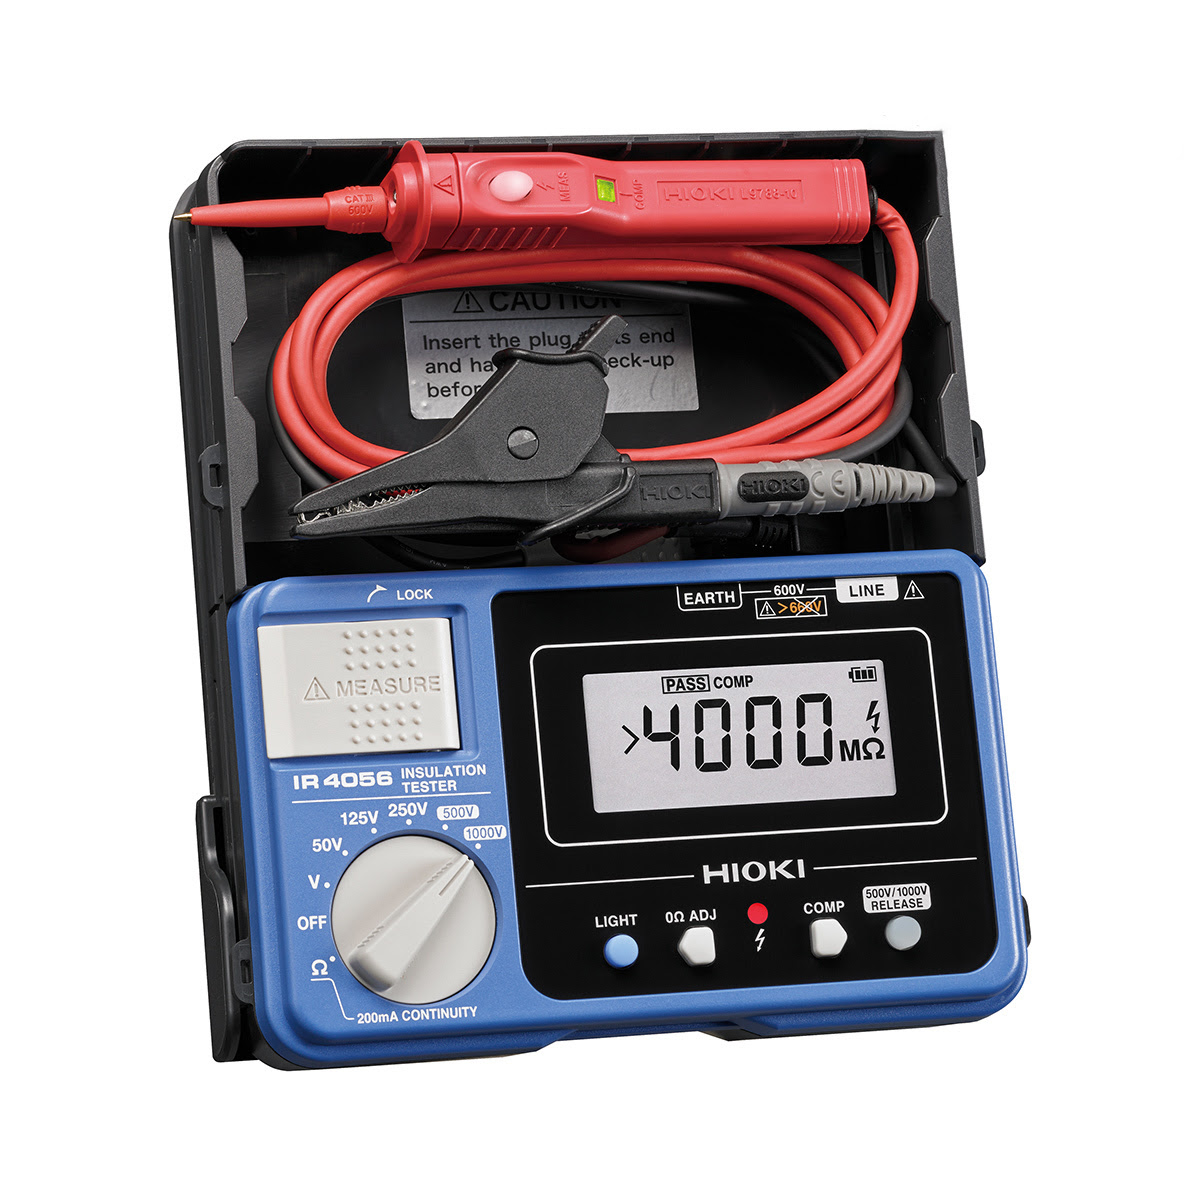 đại lý cung cấp thiết bị đo điện trở cách điện hioki ir4056-21